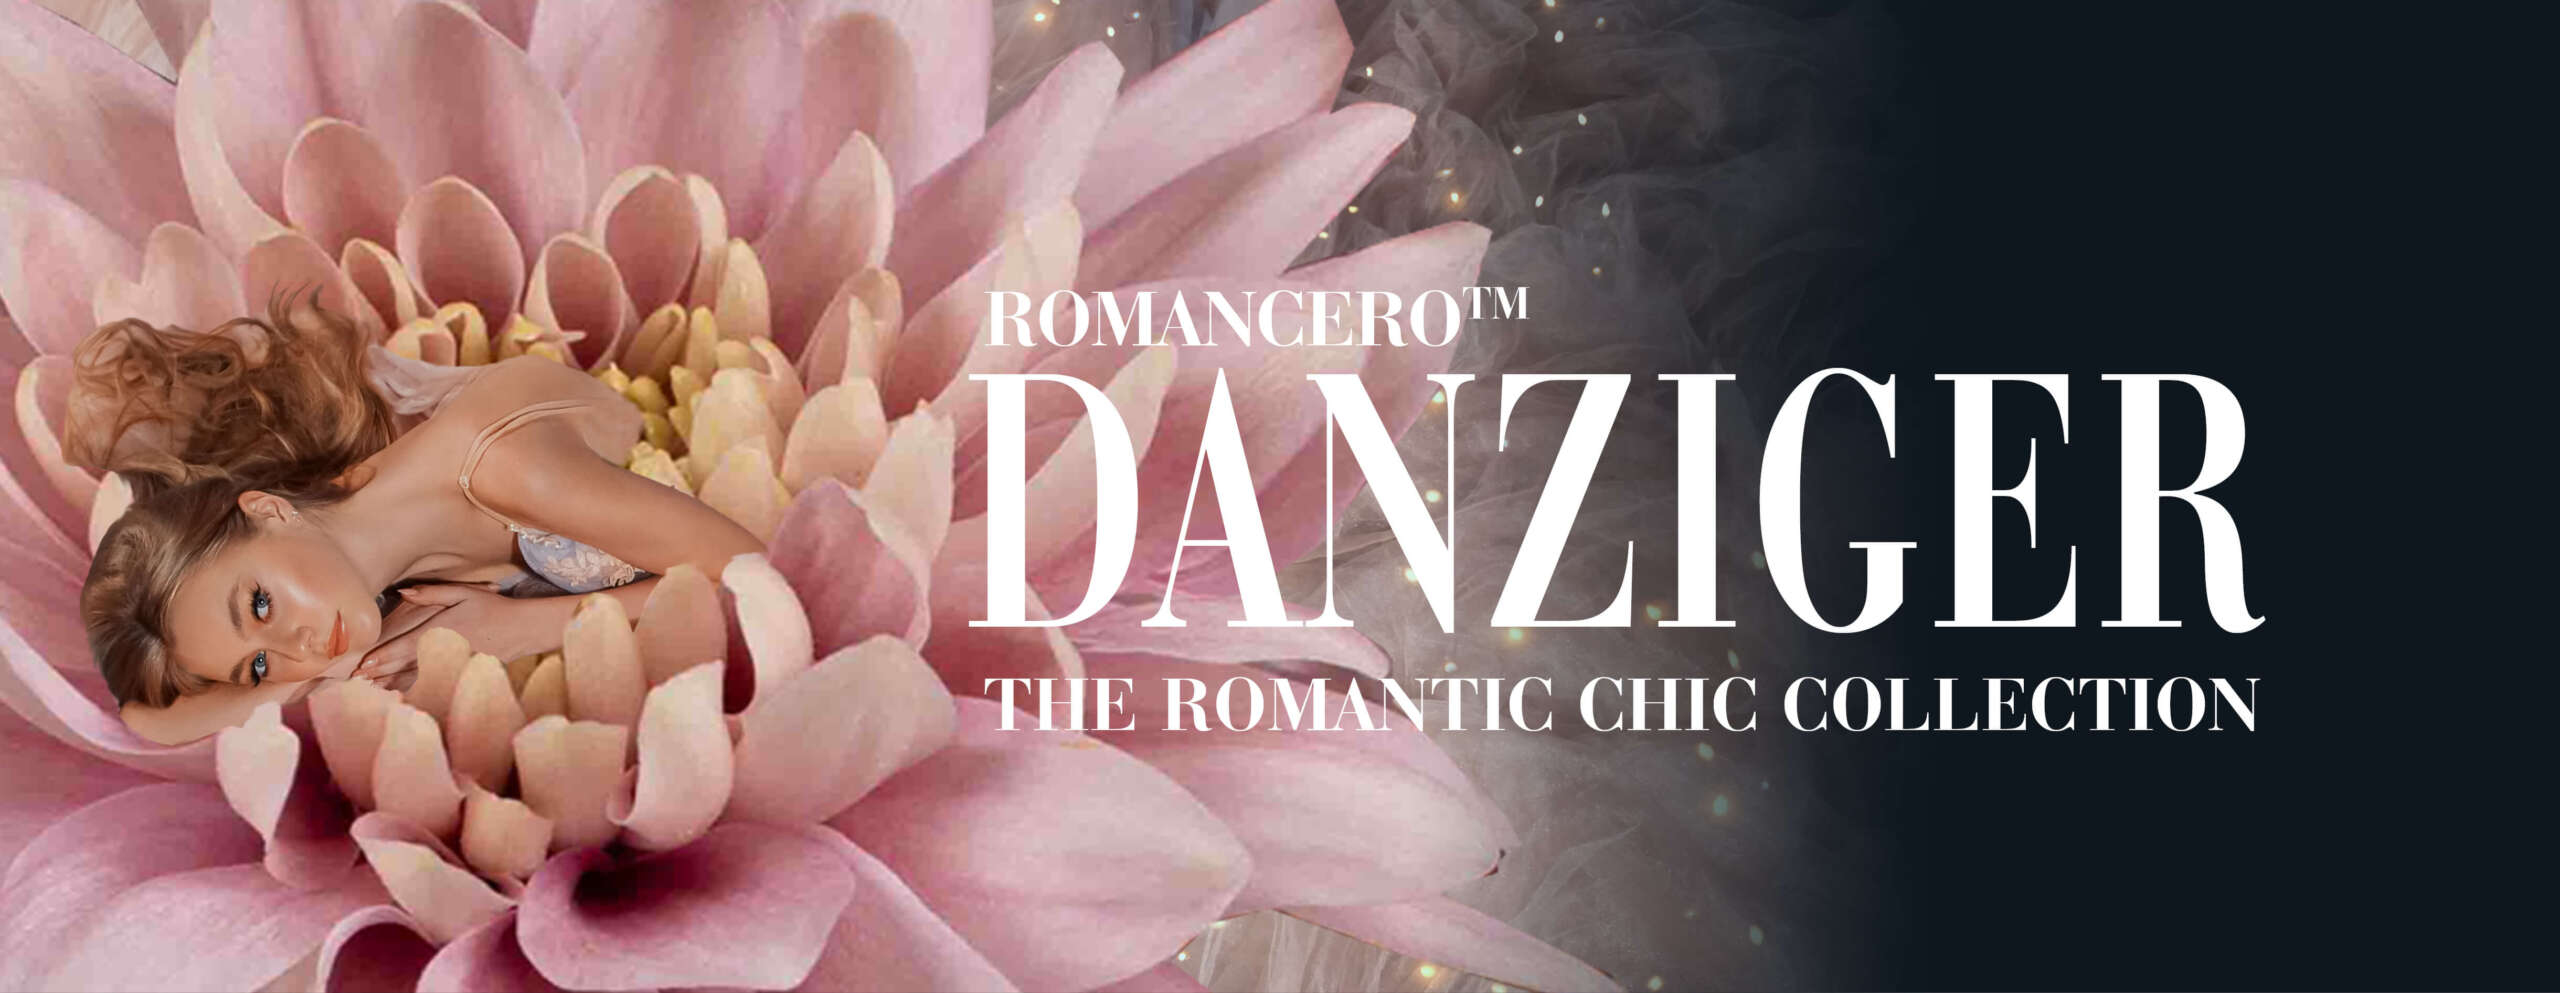 Romancero™ - The Romantic Chic collection